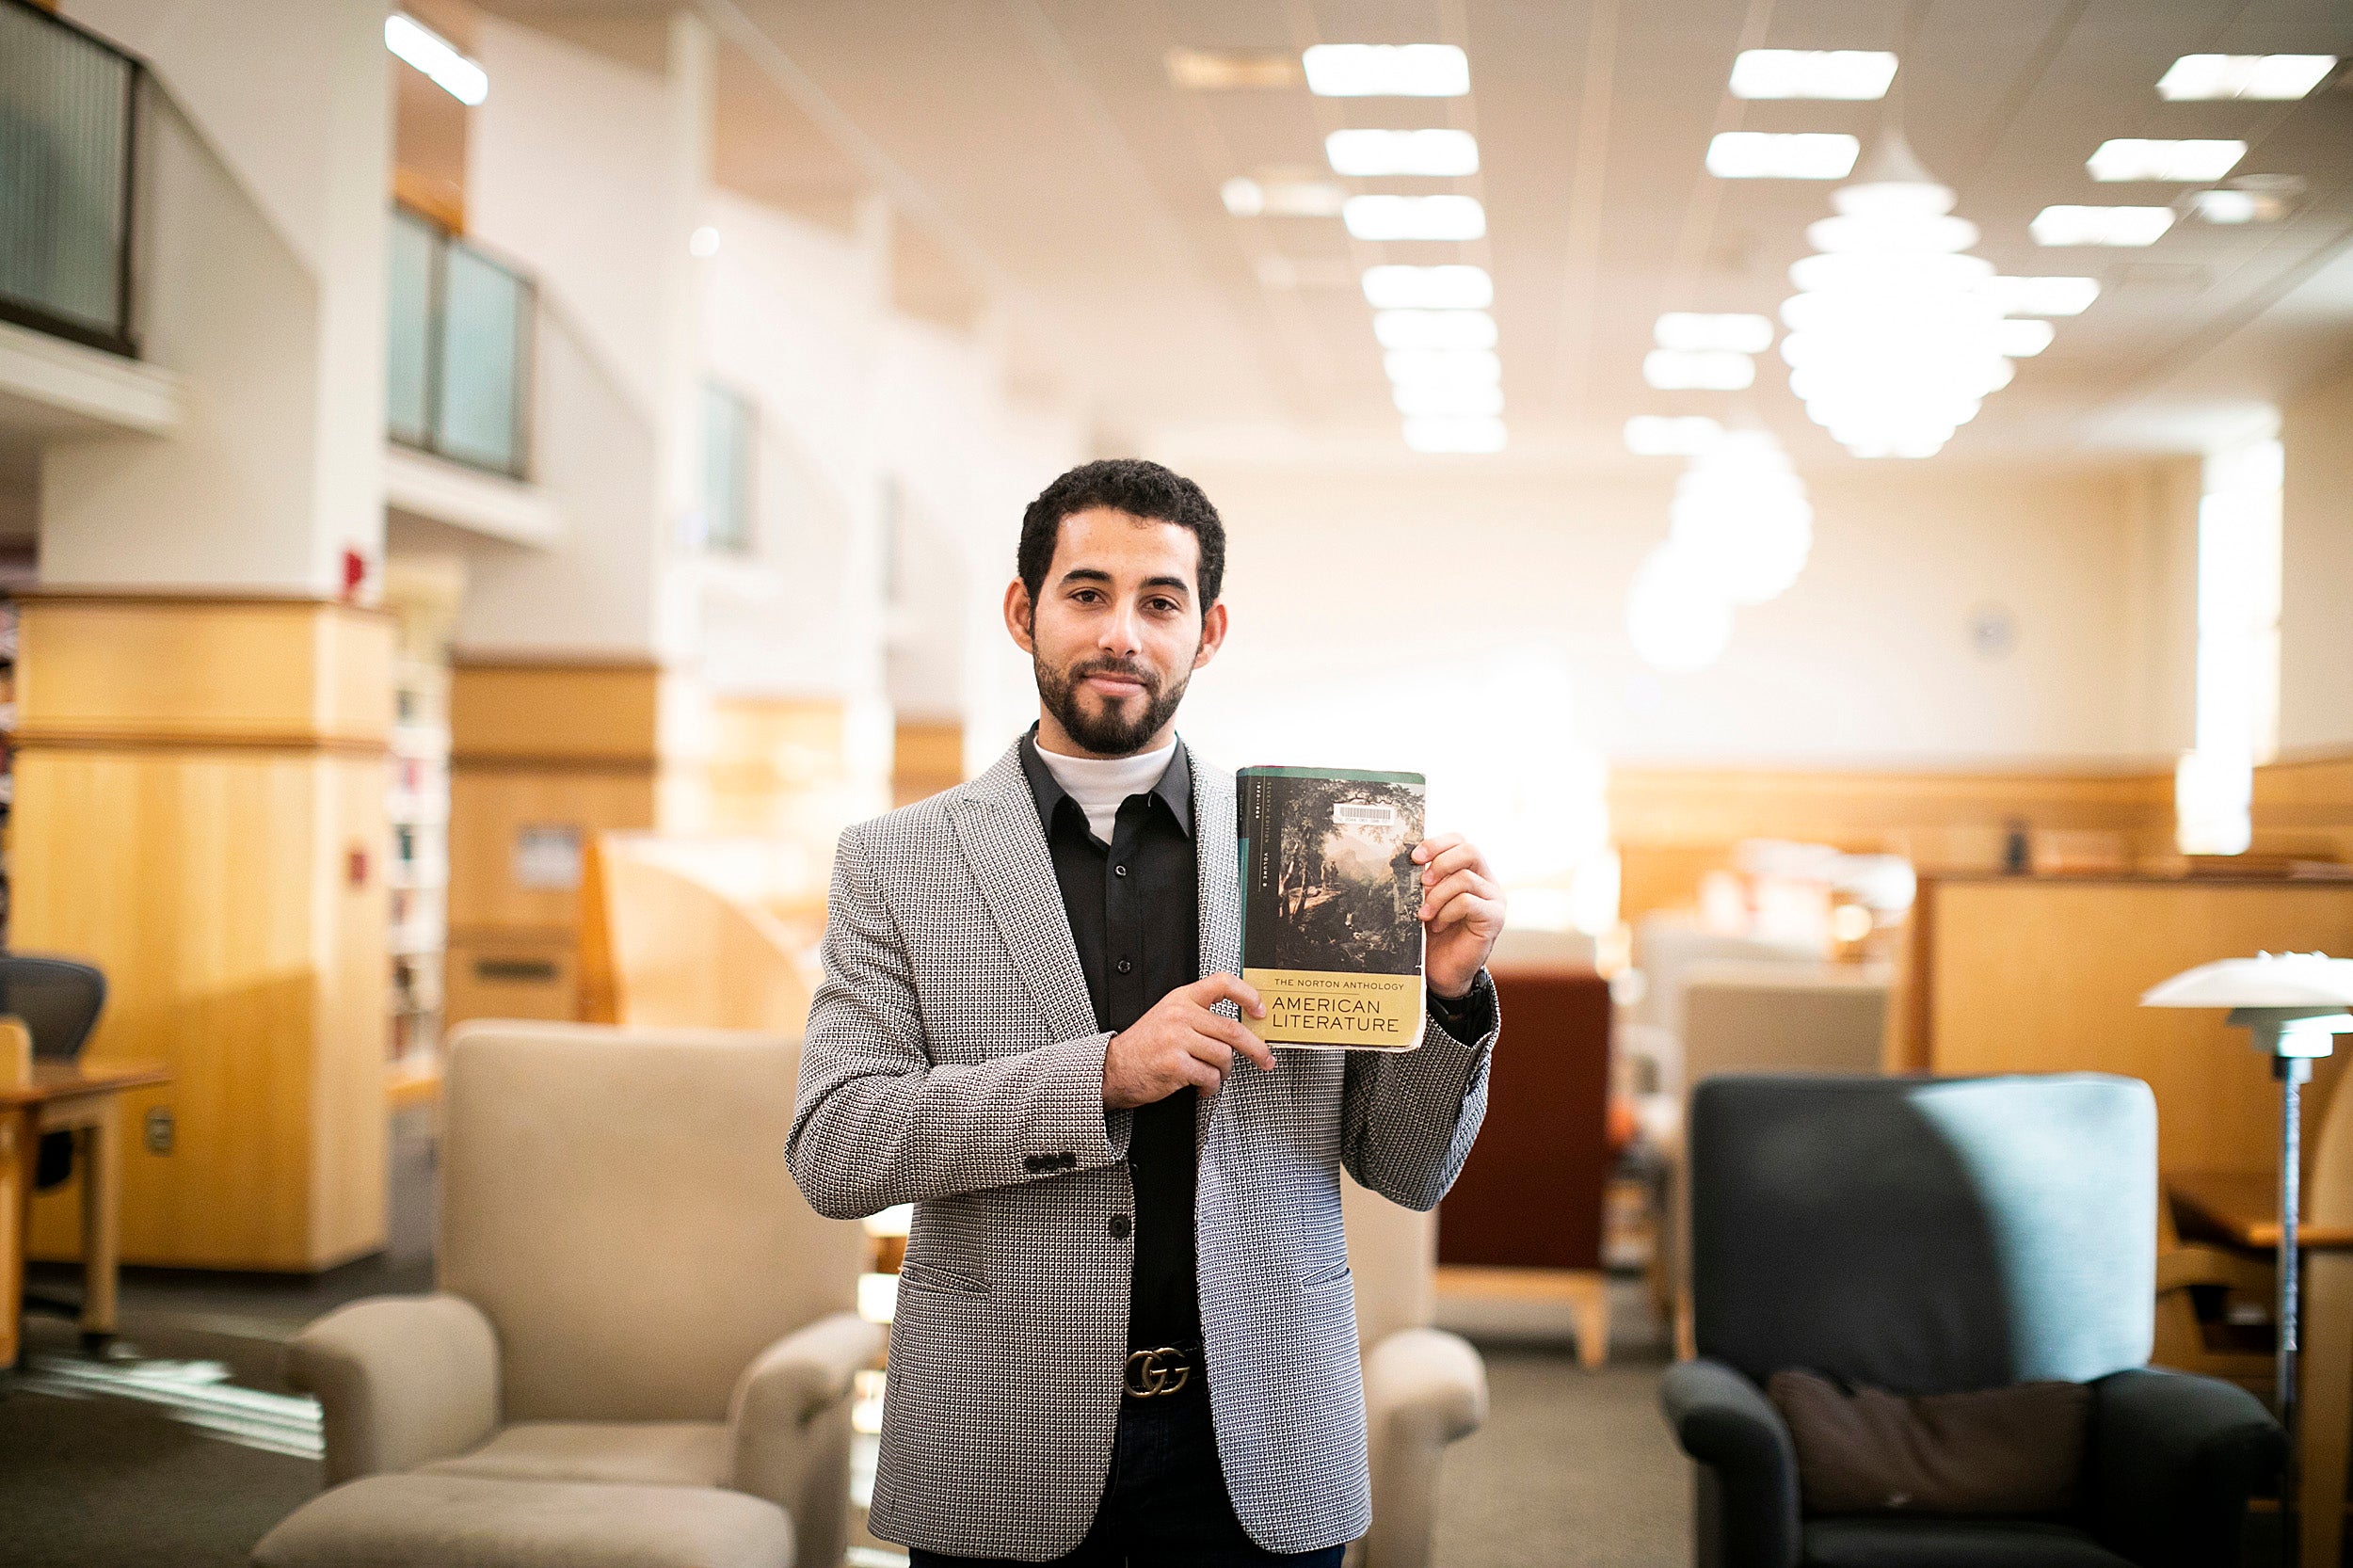 Mosab Abu Toha holding a book.